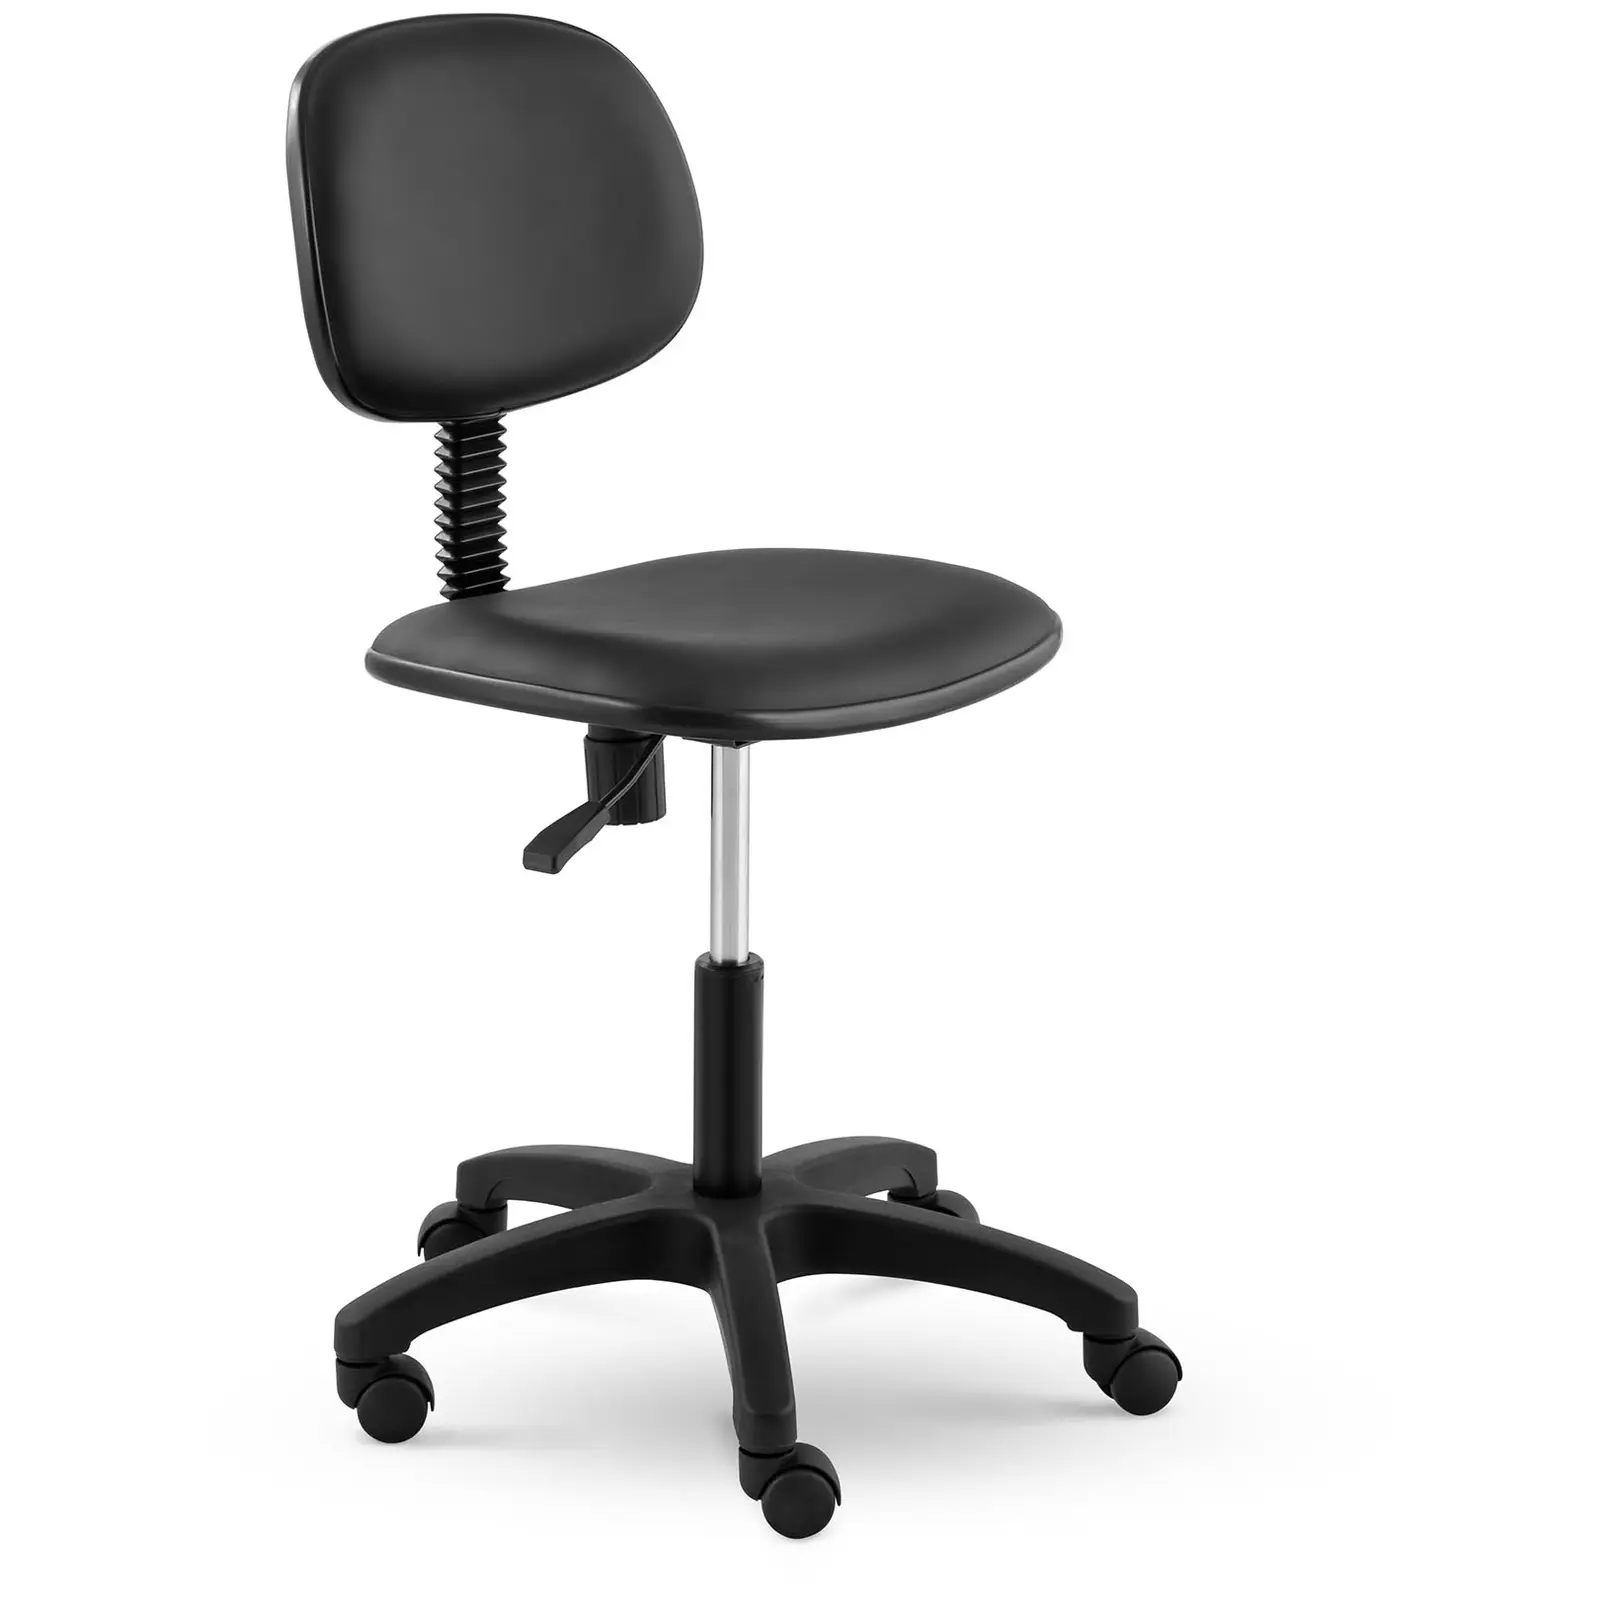 Pracovní židle – 120 kg – Černá – výška nastavitelná v rozmezí 450 - 590 mm